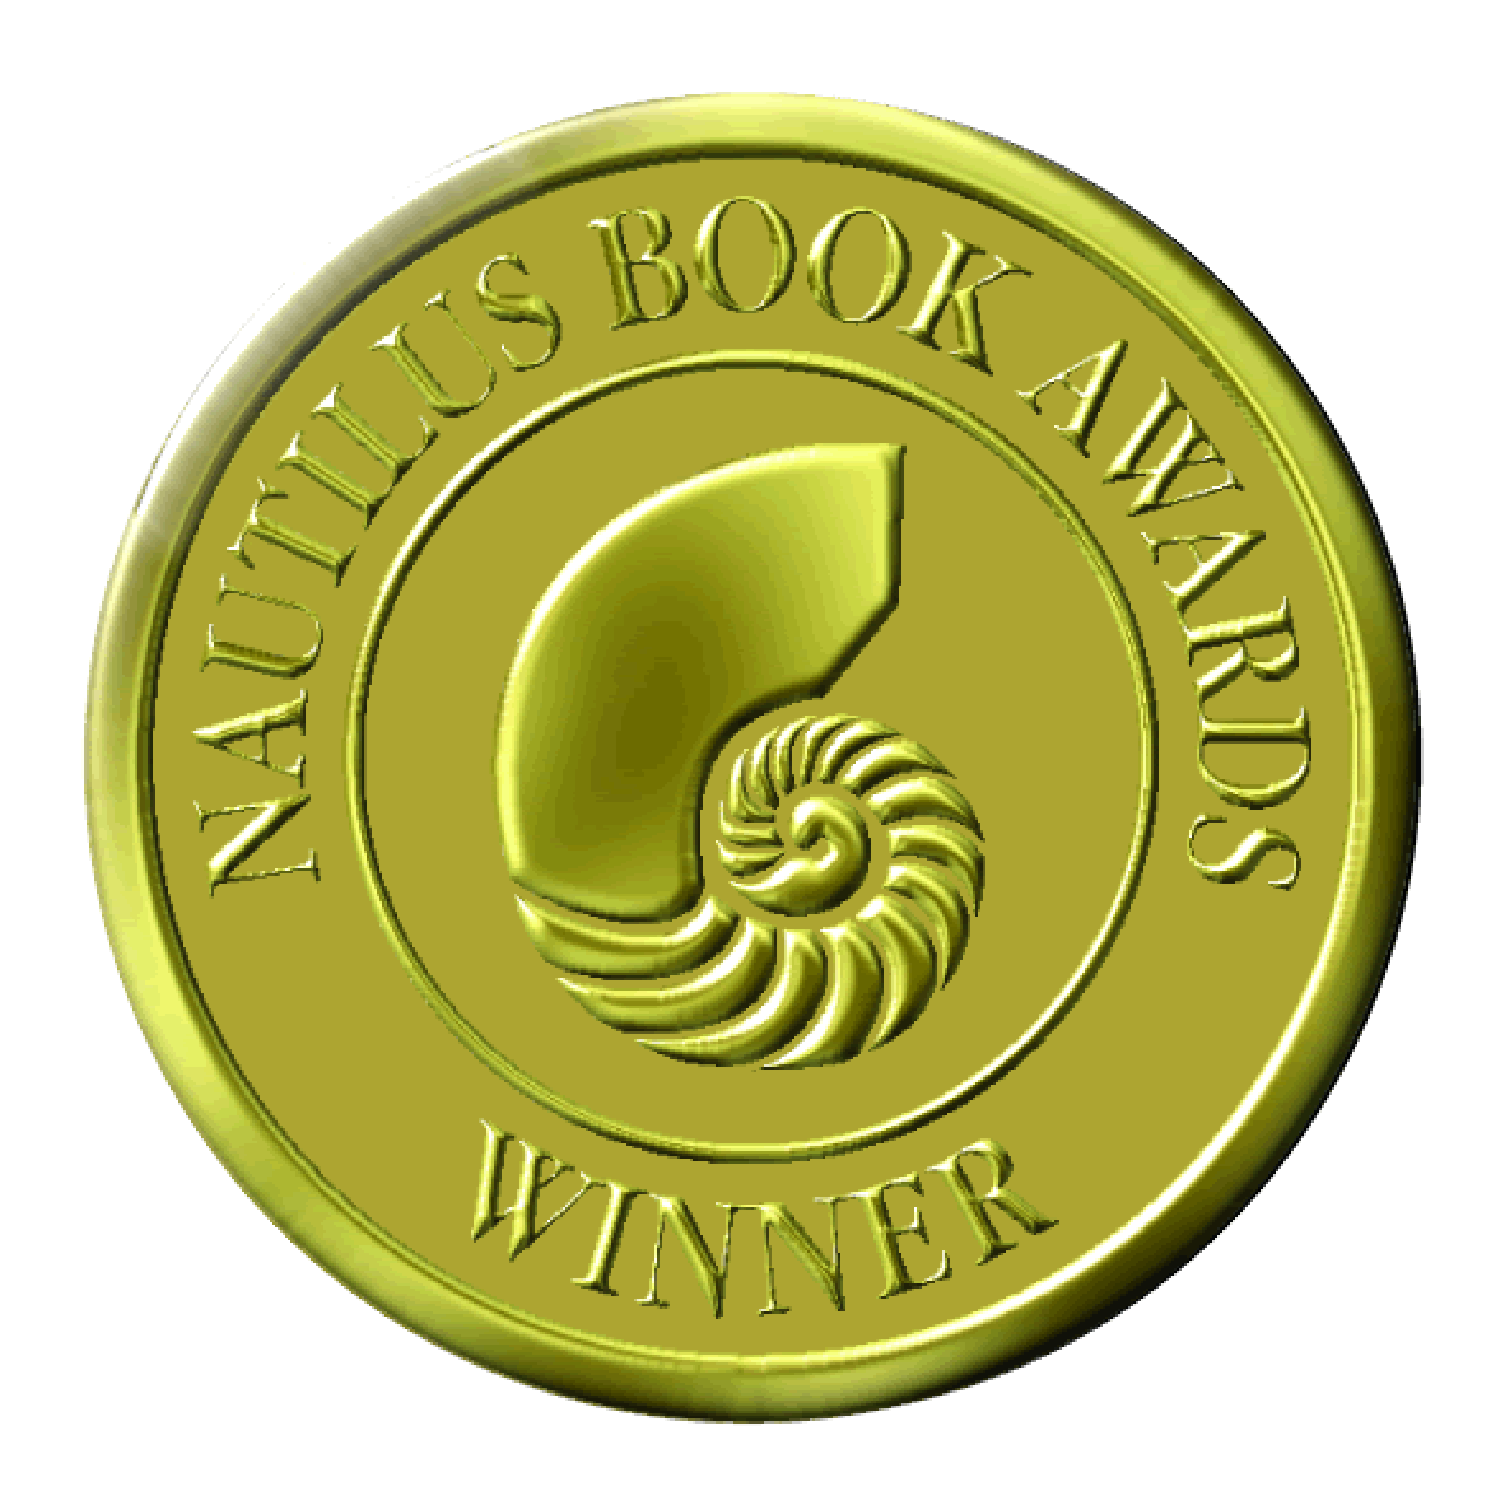 The Nautilus Book Awards